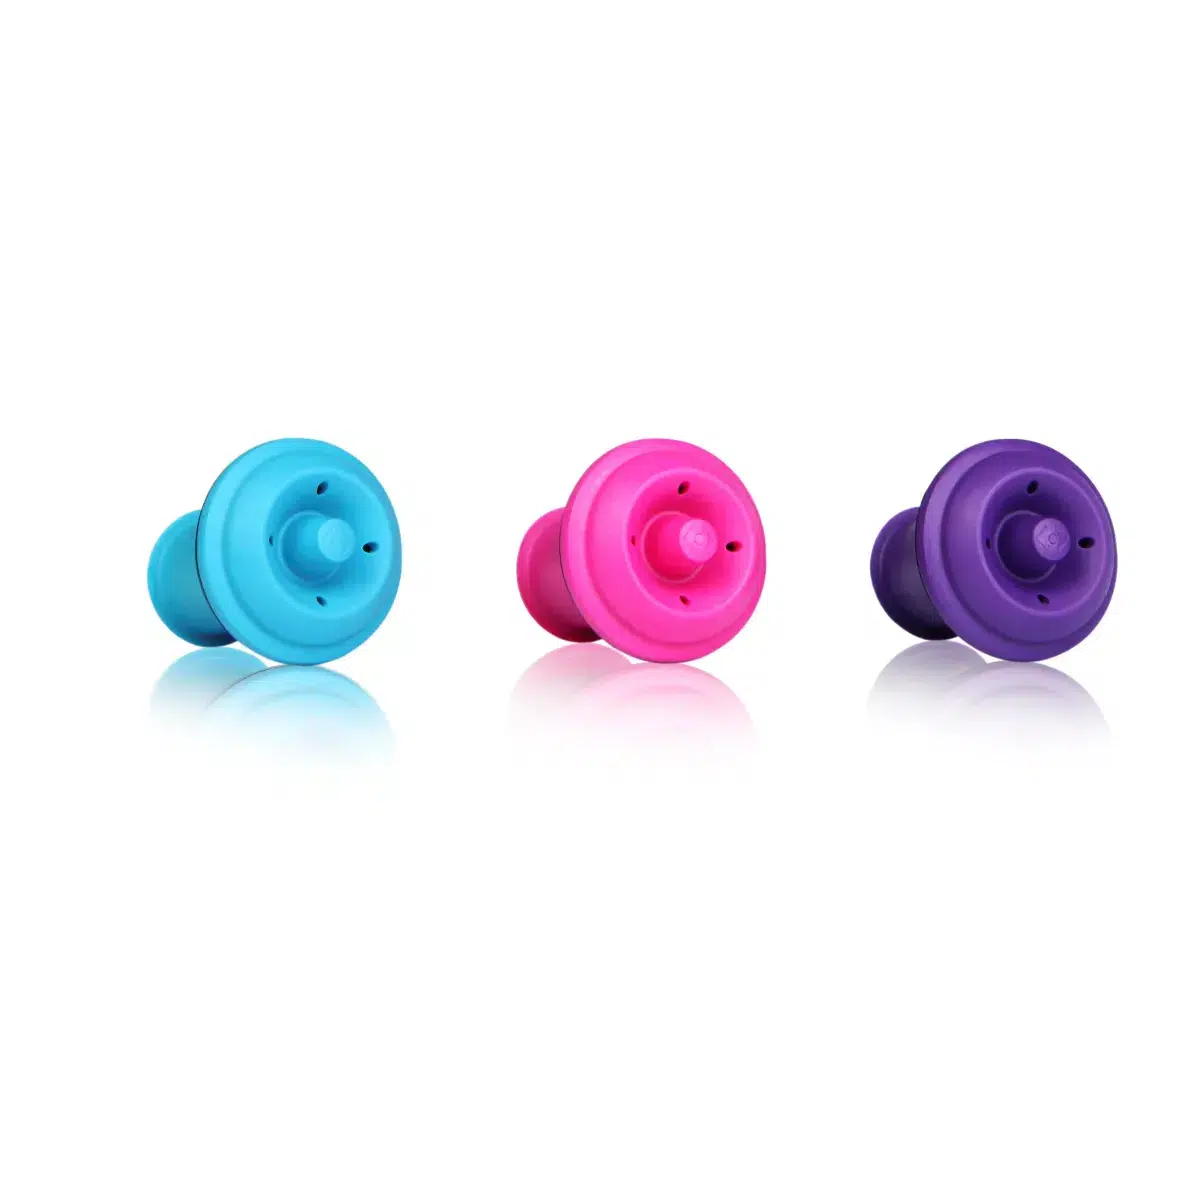 Trois boutons colorés bleu, rose et violet alignés.